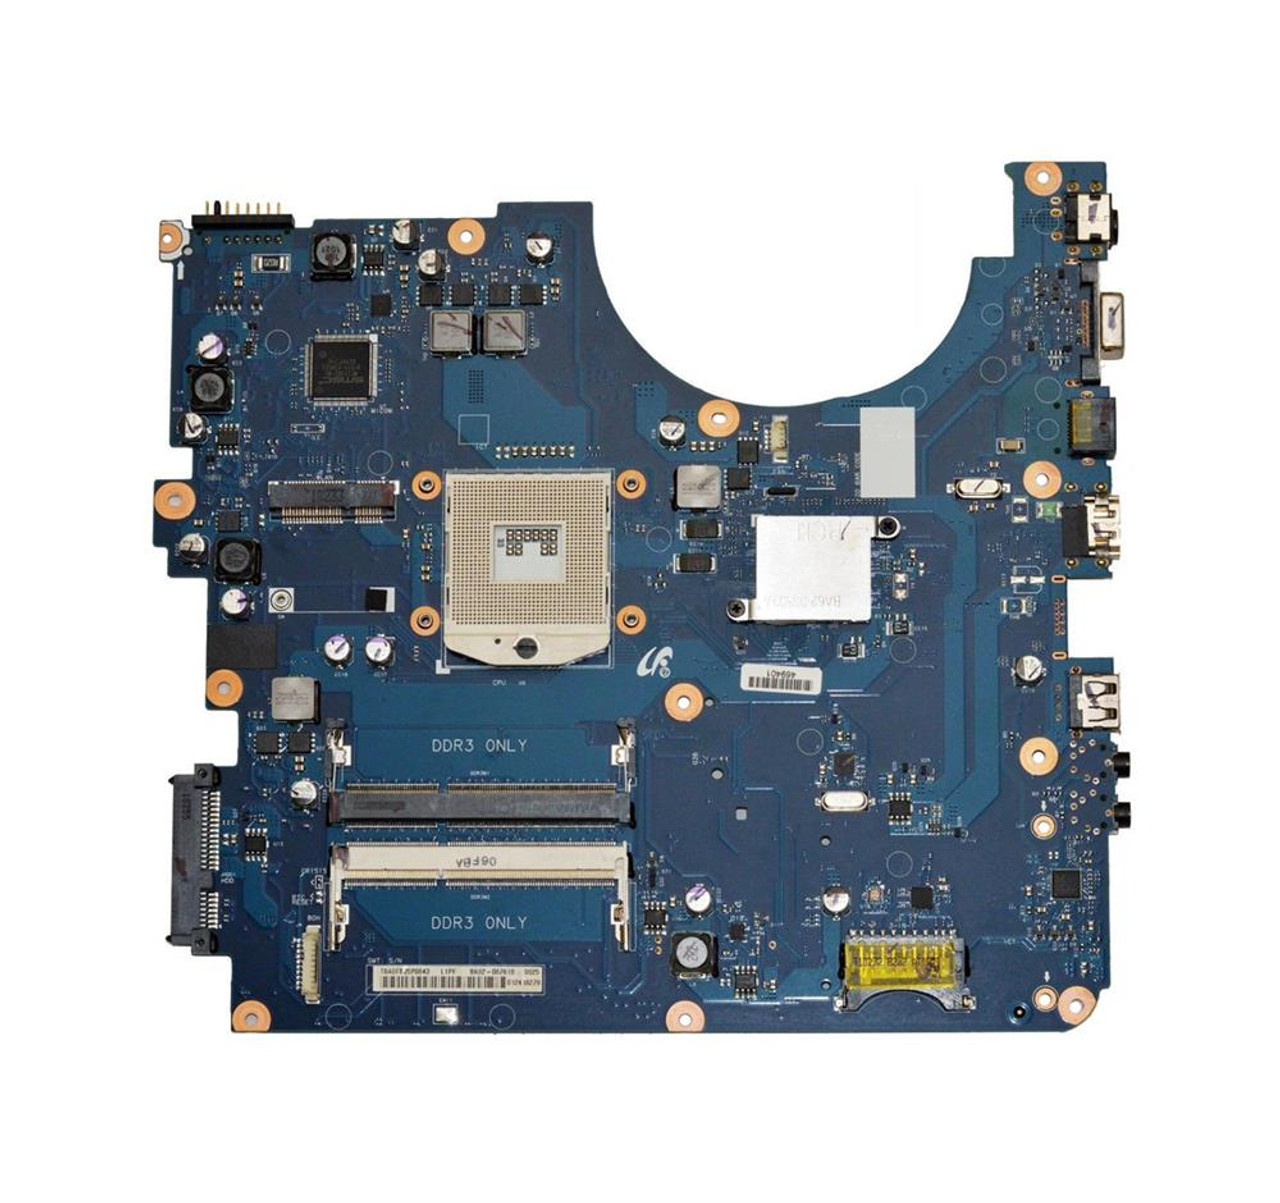 BA92-06761A LG System Board (Motherboard) Socket 478 for R580 Laptop (Refurbished)